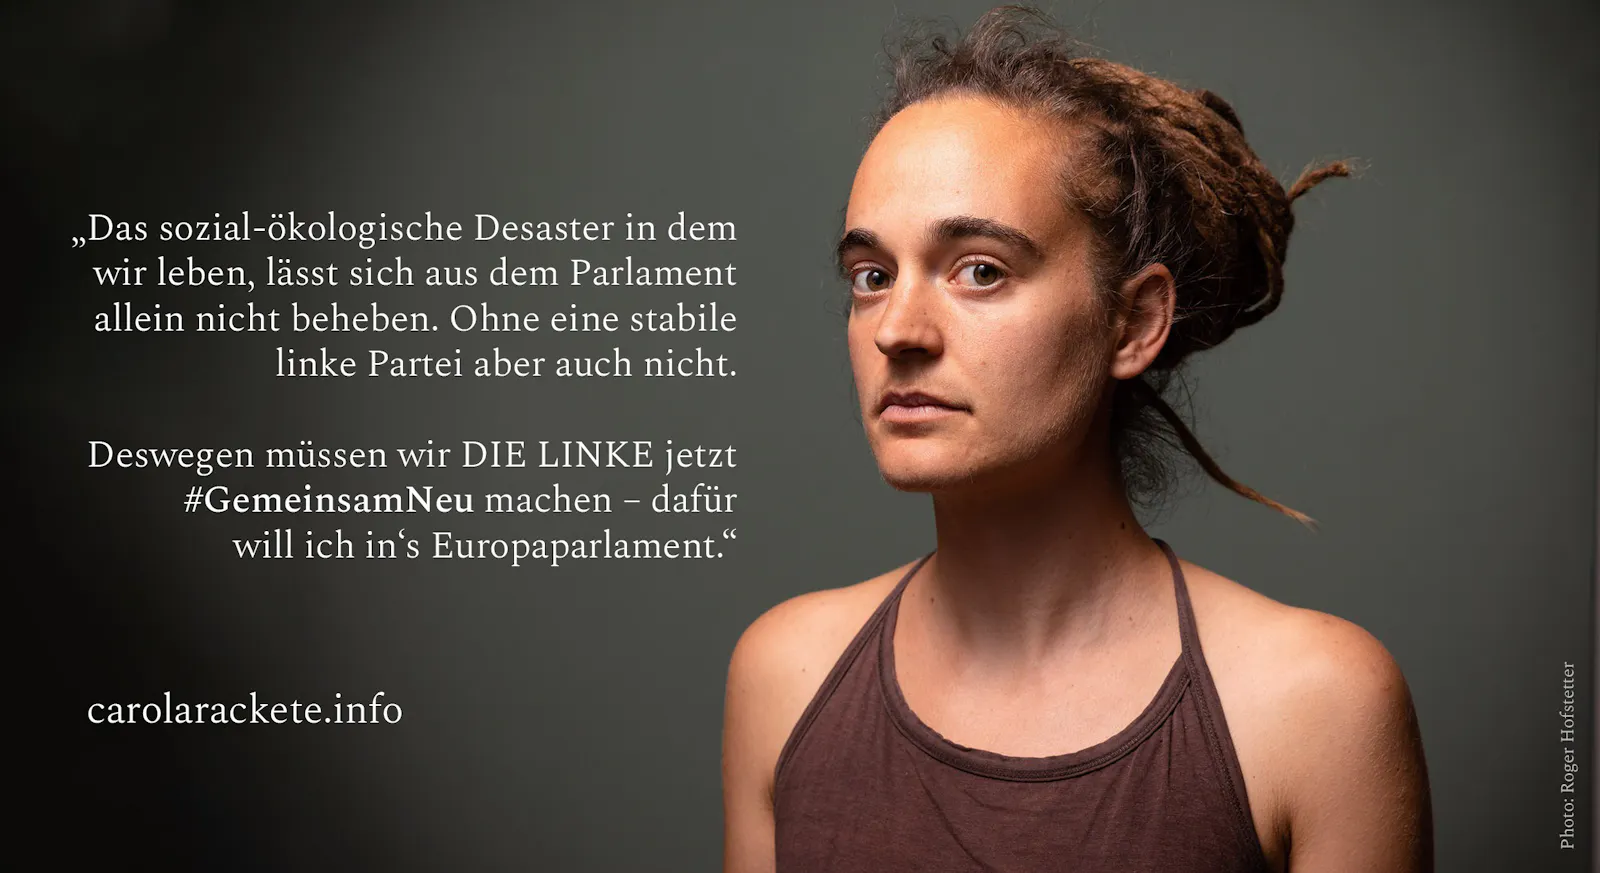 Ein Portrait von Carola Rackete mit dem Zitat: „Das sozial-ökologische Desaster in dem wir leben, lässt sich aus dem Parlament allein nicht beheben. Ohne eine stabile linke Partei aber auch nicht. Deswegen müssen wir DIE LINKE jetzt #GemeinsamNeu machen - dafür will ich in's Europaparlament."